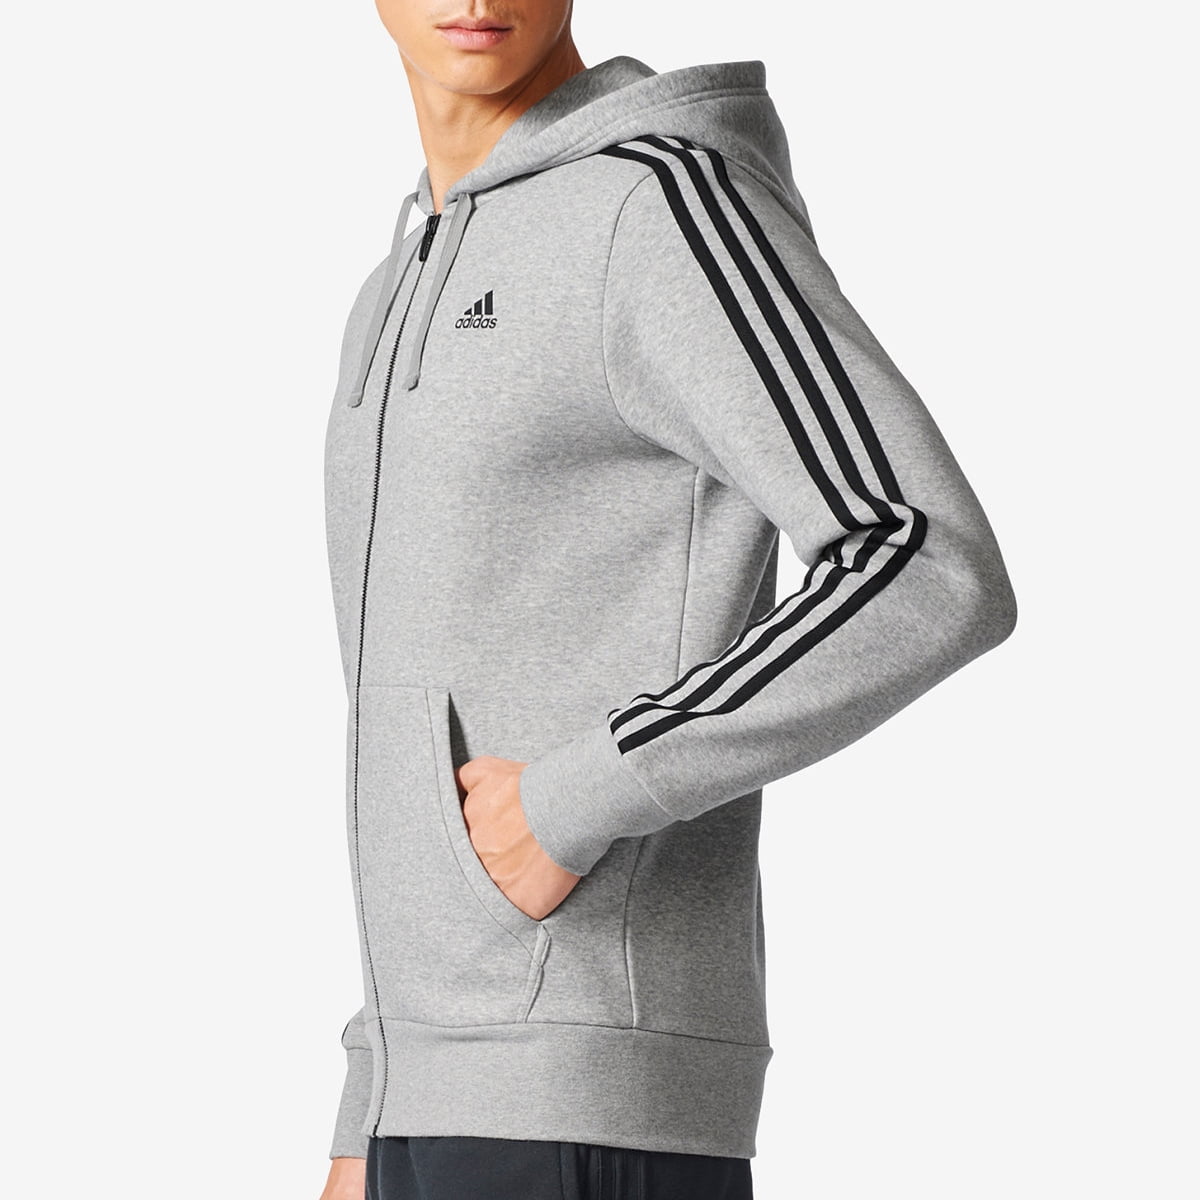 Adidas Men's Essentials Full-Zip Fleece Hoodie Hoody (Heather Gray S) - Walmart.com